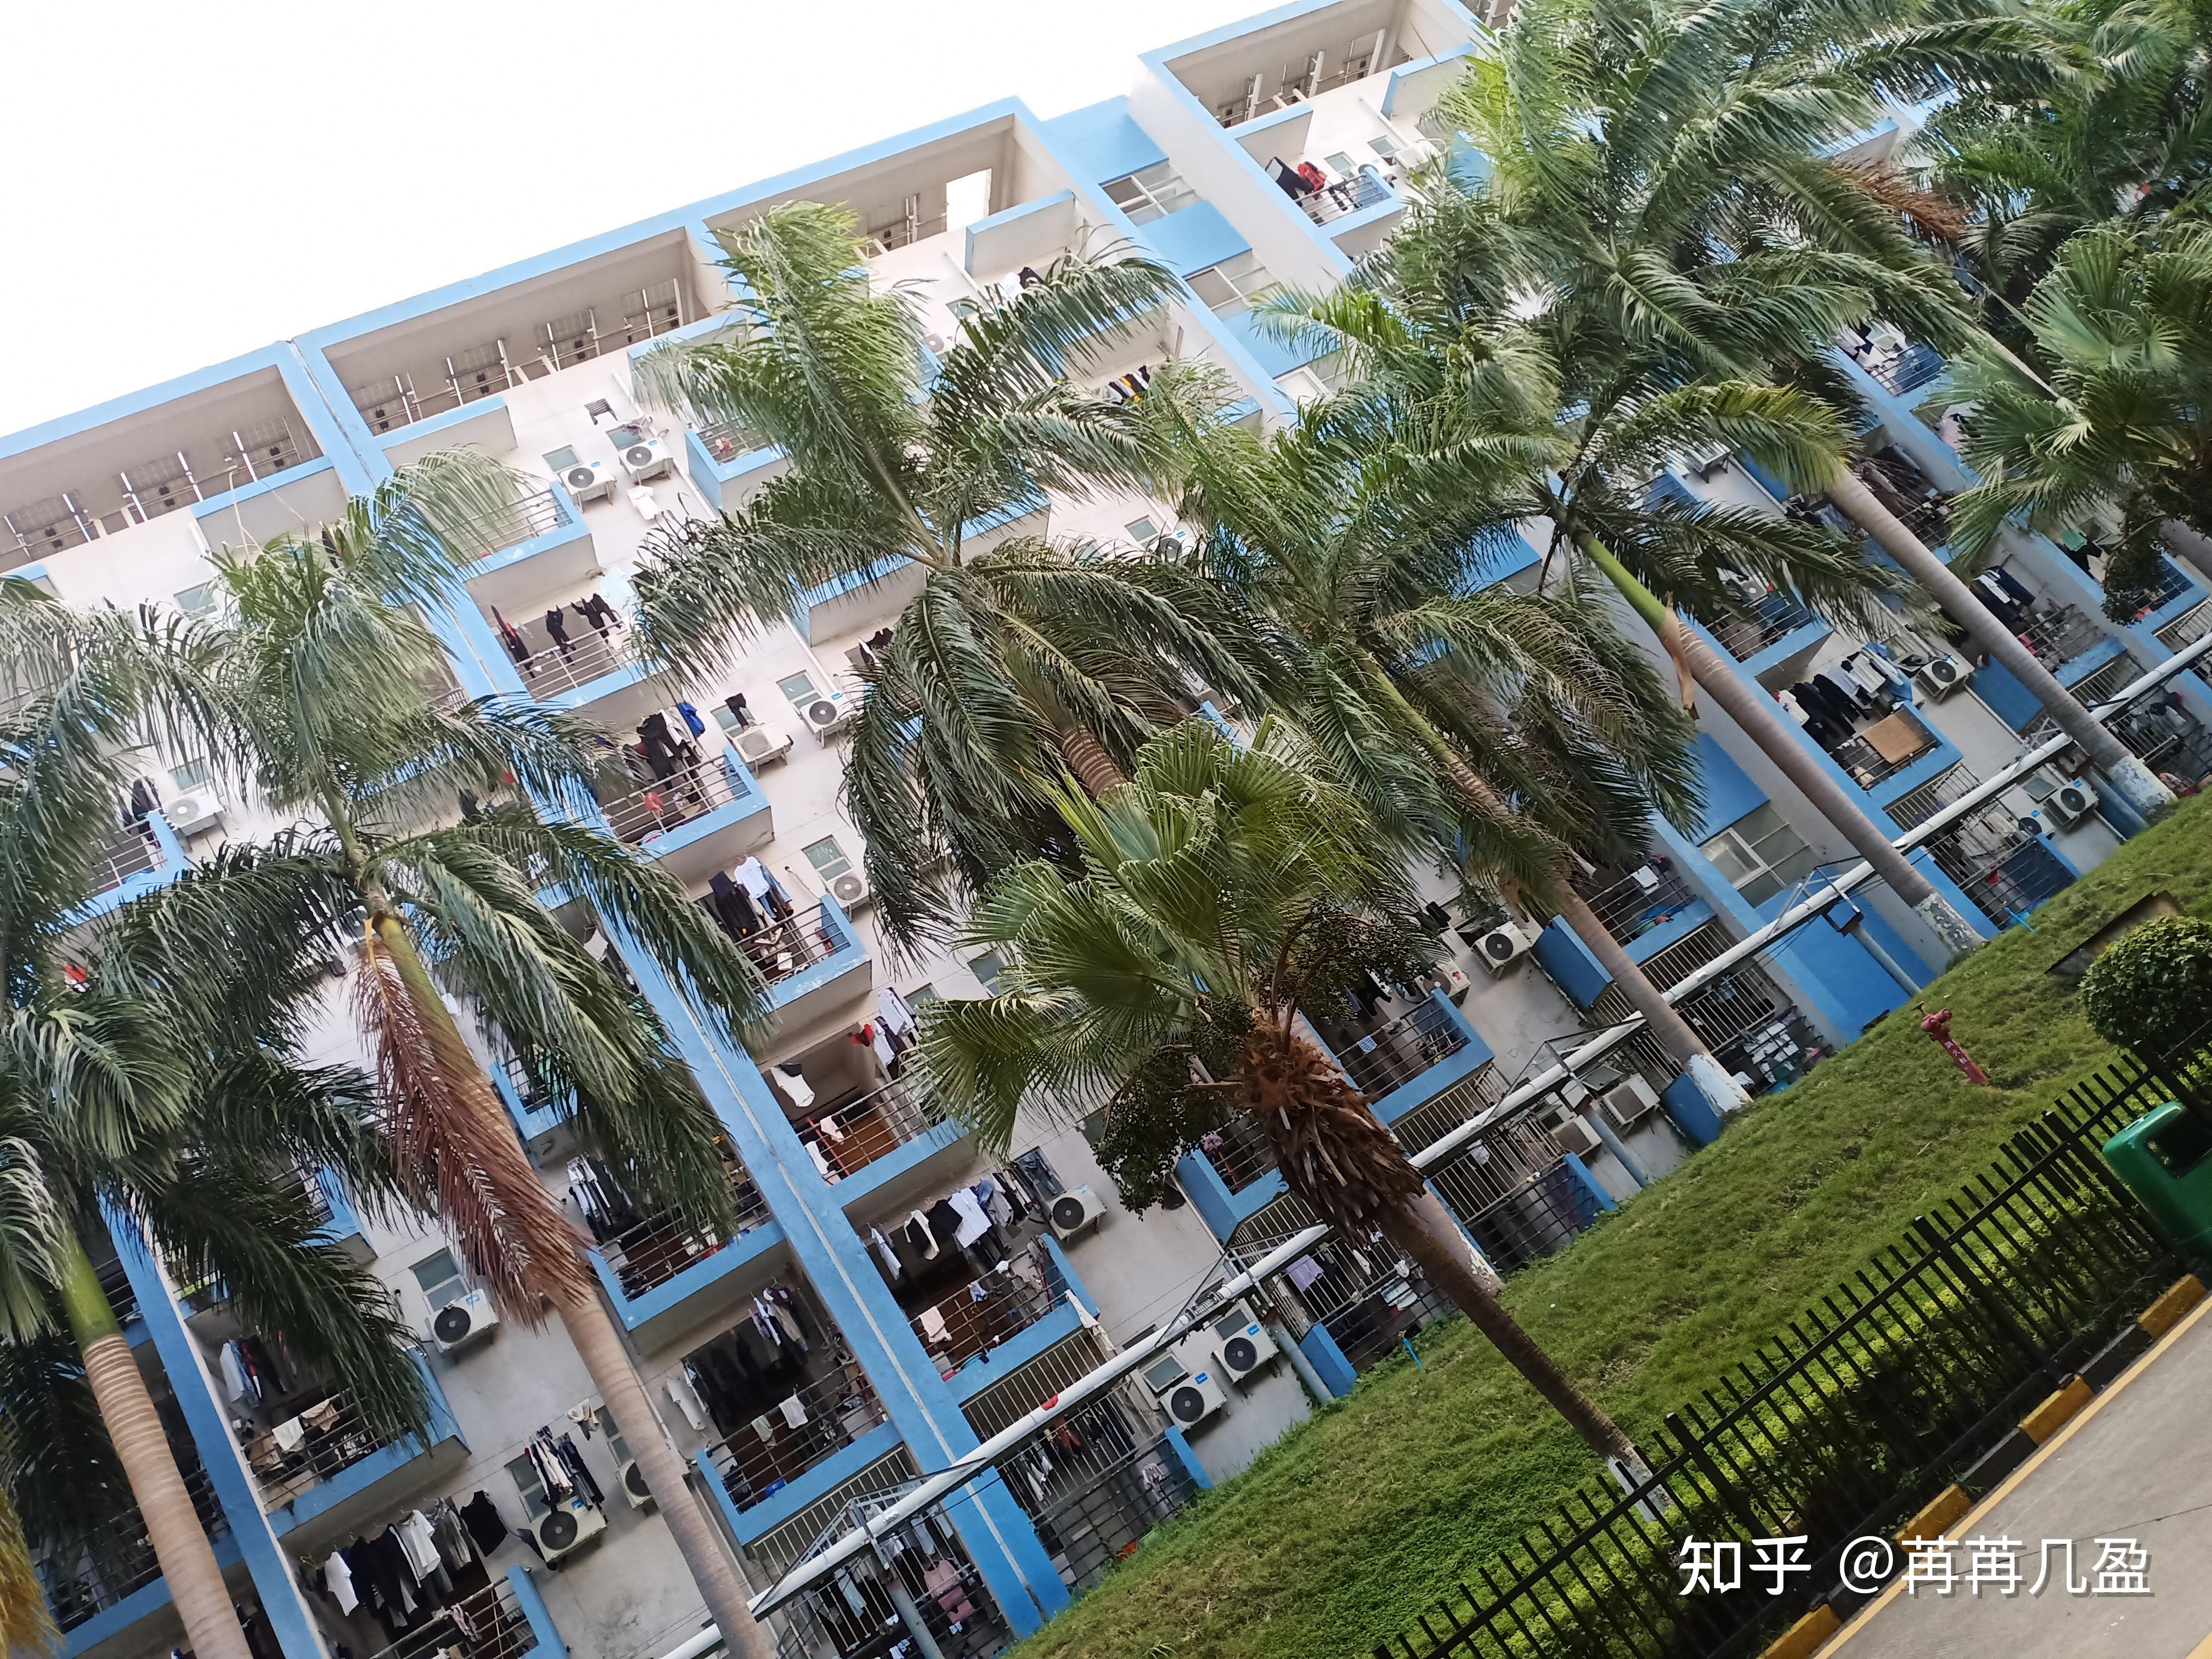 上海比亚迪宿舍照片图片